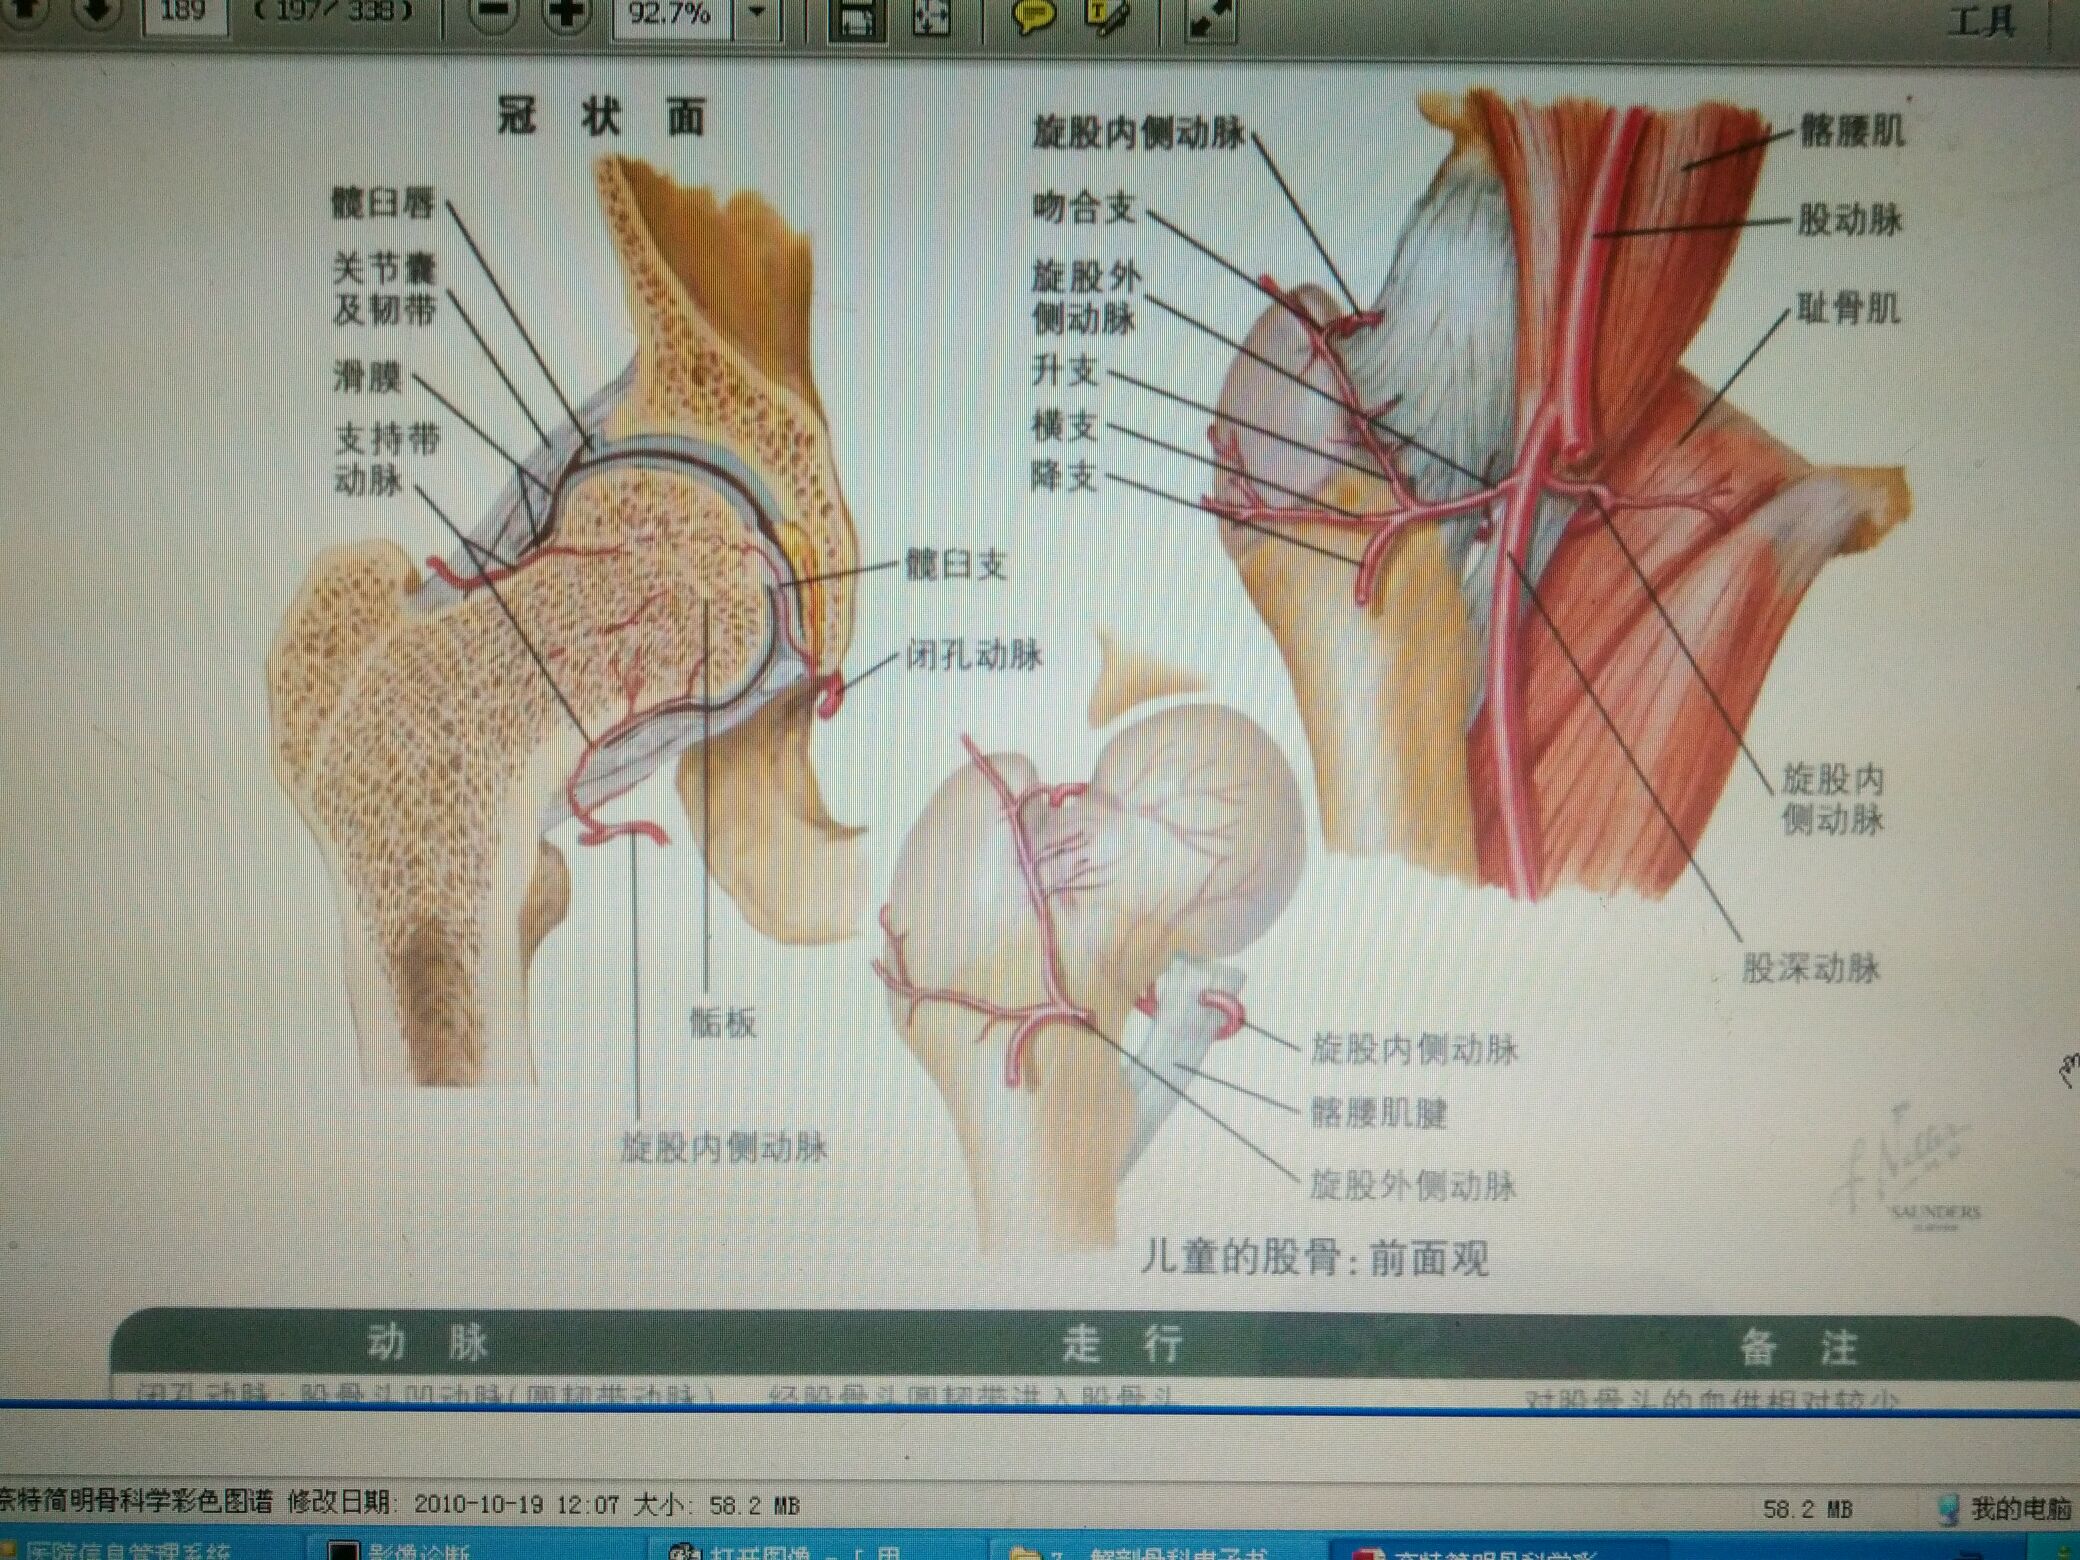 股骨剖面图图片